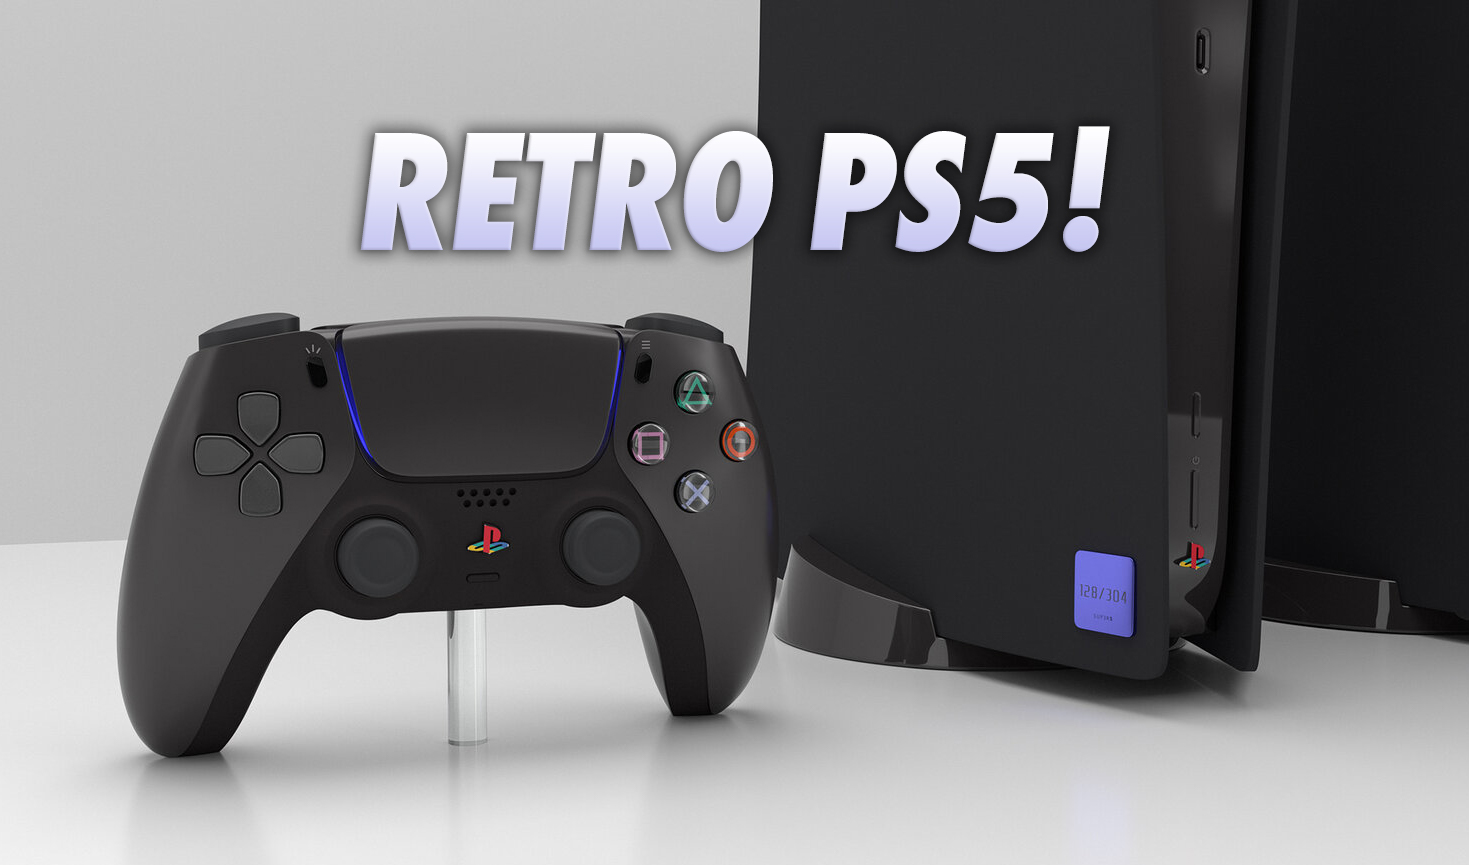 Powstała specjalna wersja PS5 inspirowana klasycznymi konsolami Sony. Pojutrze rusza przedsprzedaż, dostępność limitowana!